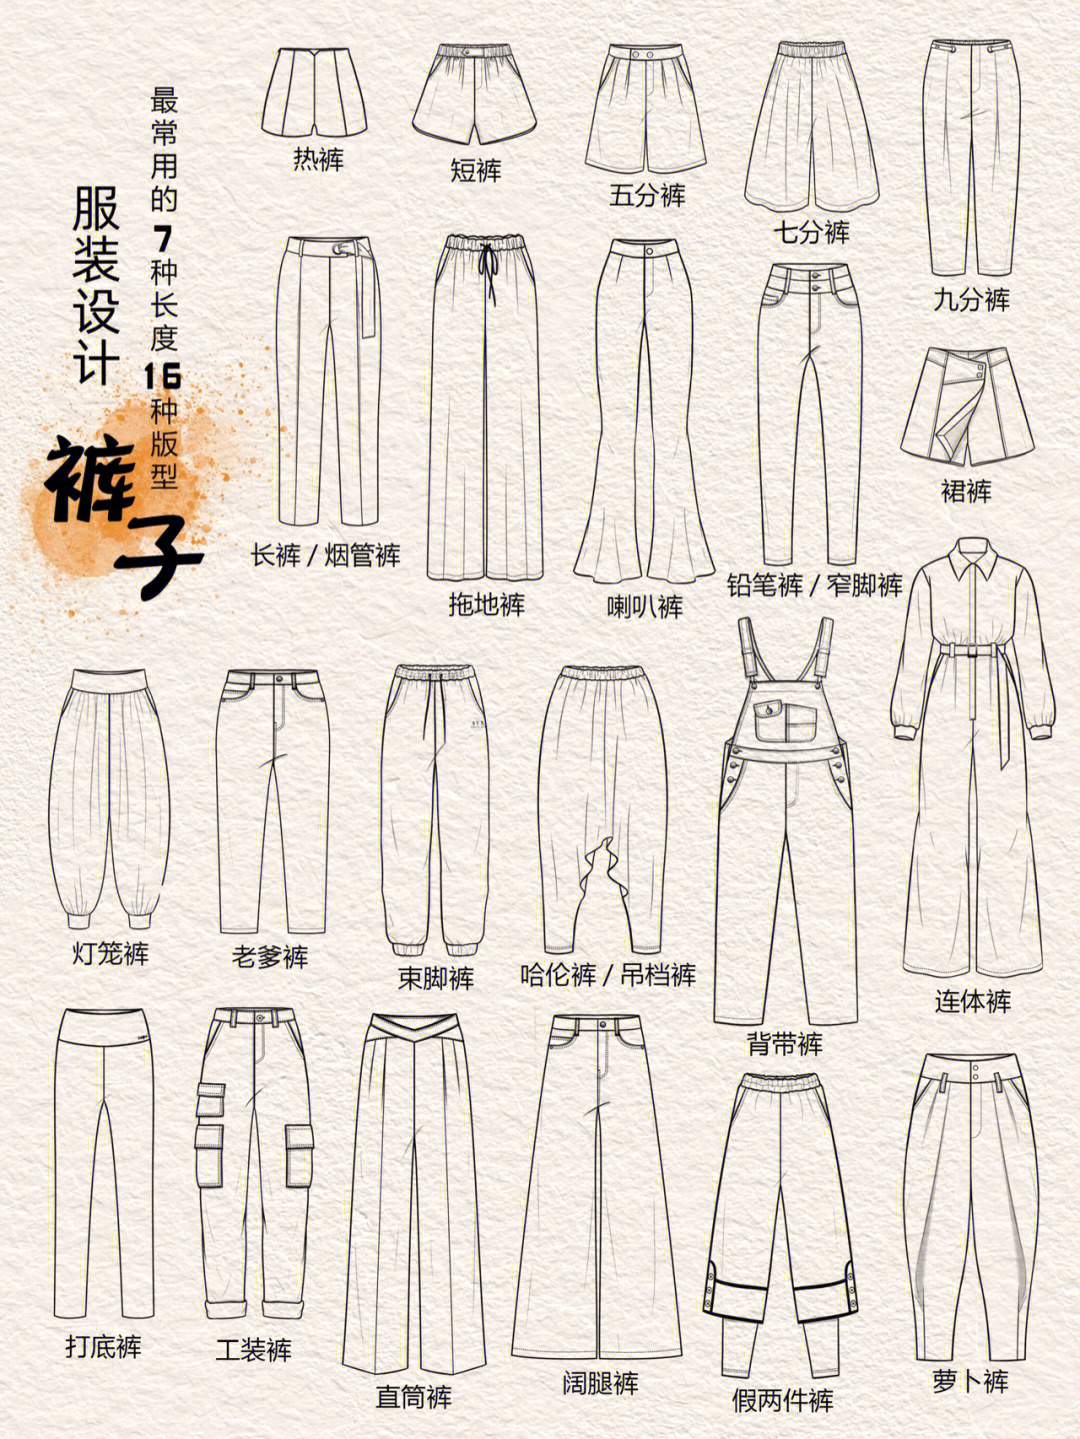 女裤裤型分类名称图片